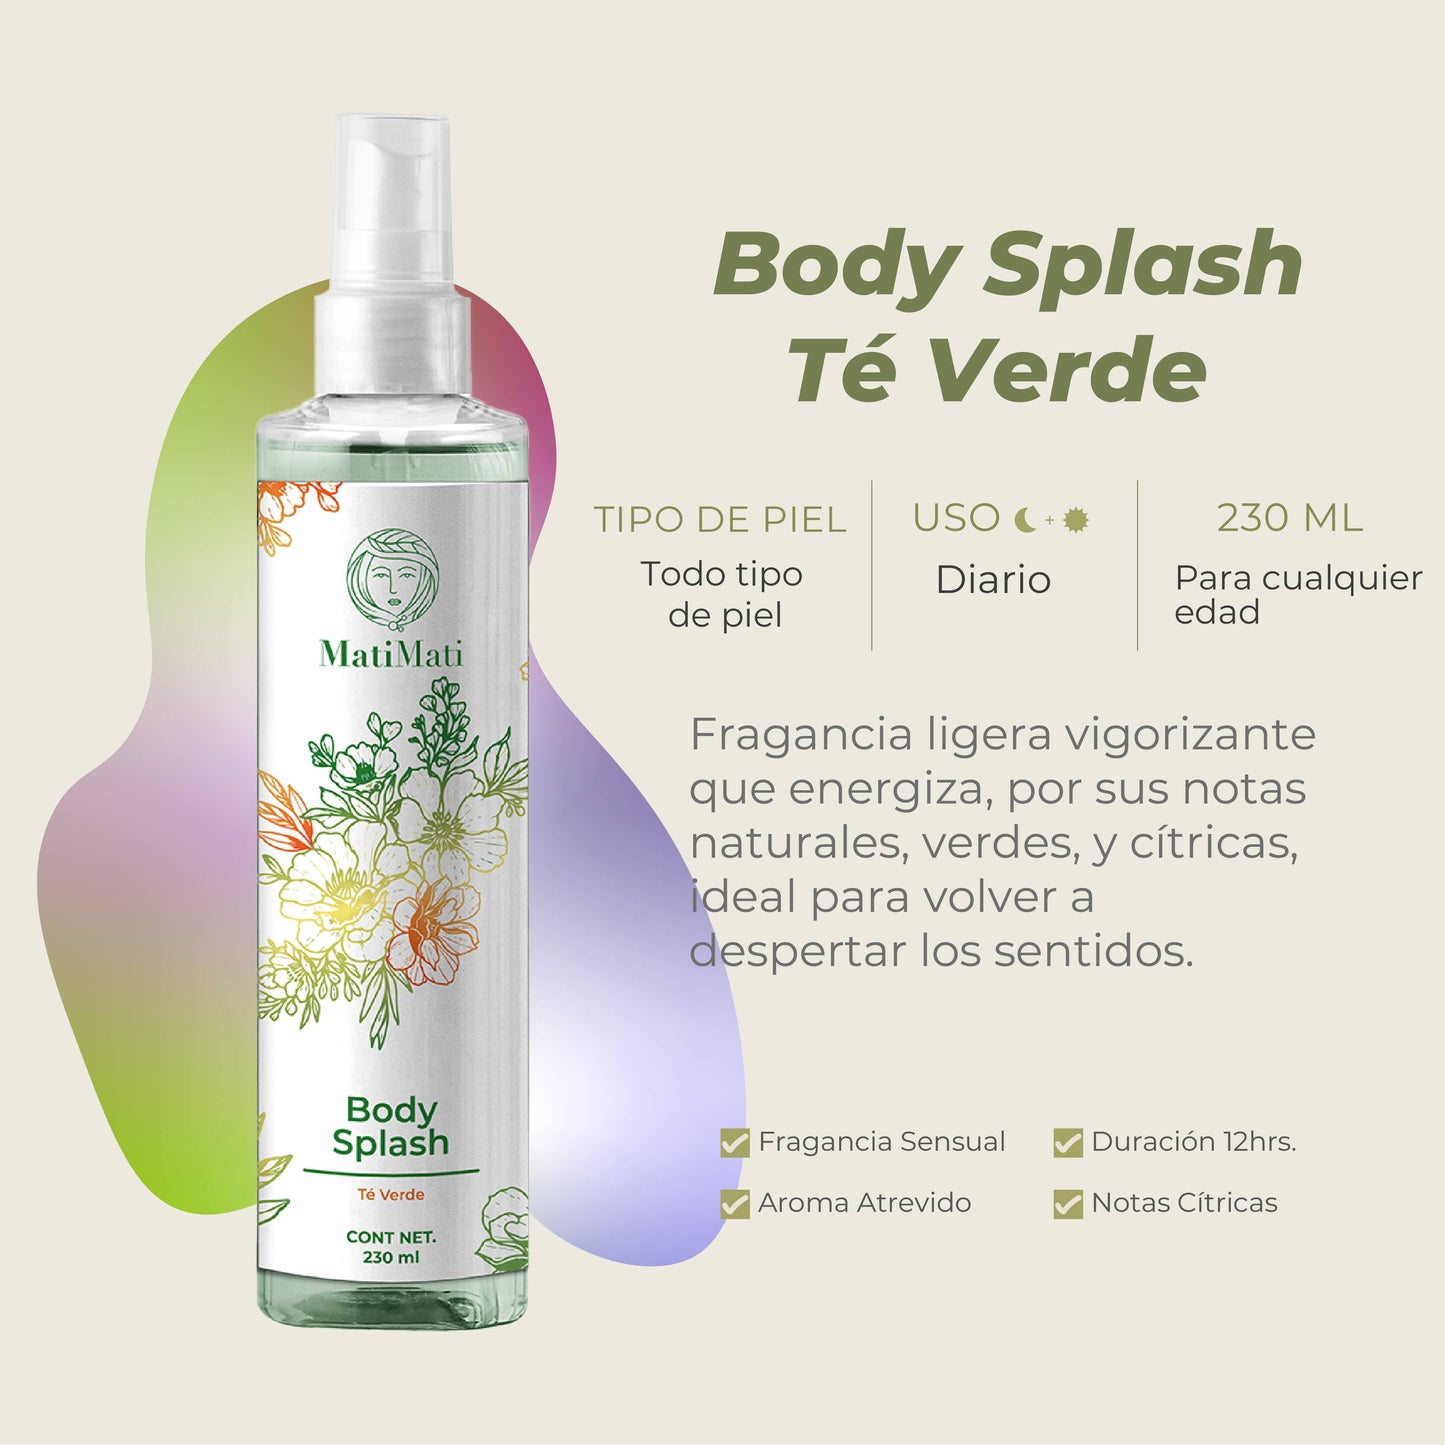 Body Splash Té Verde